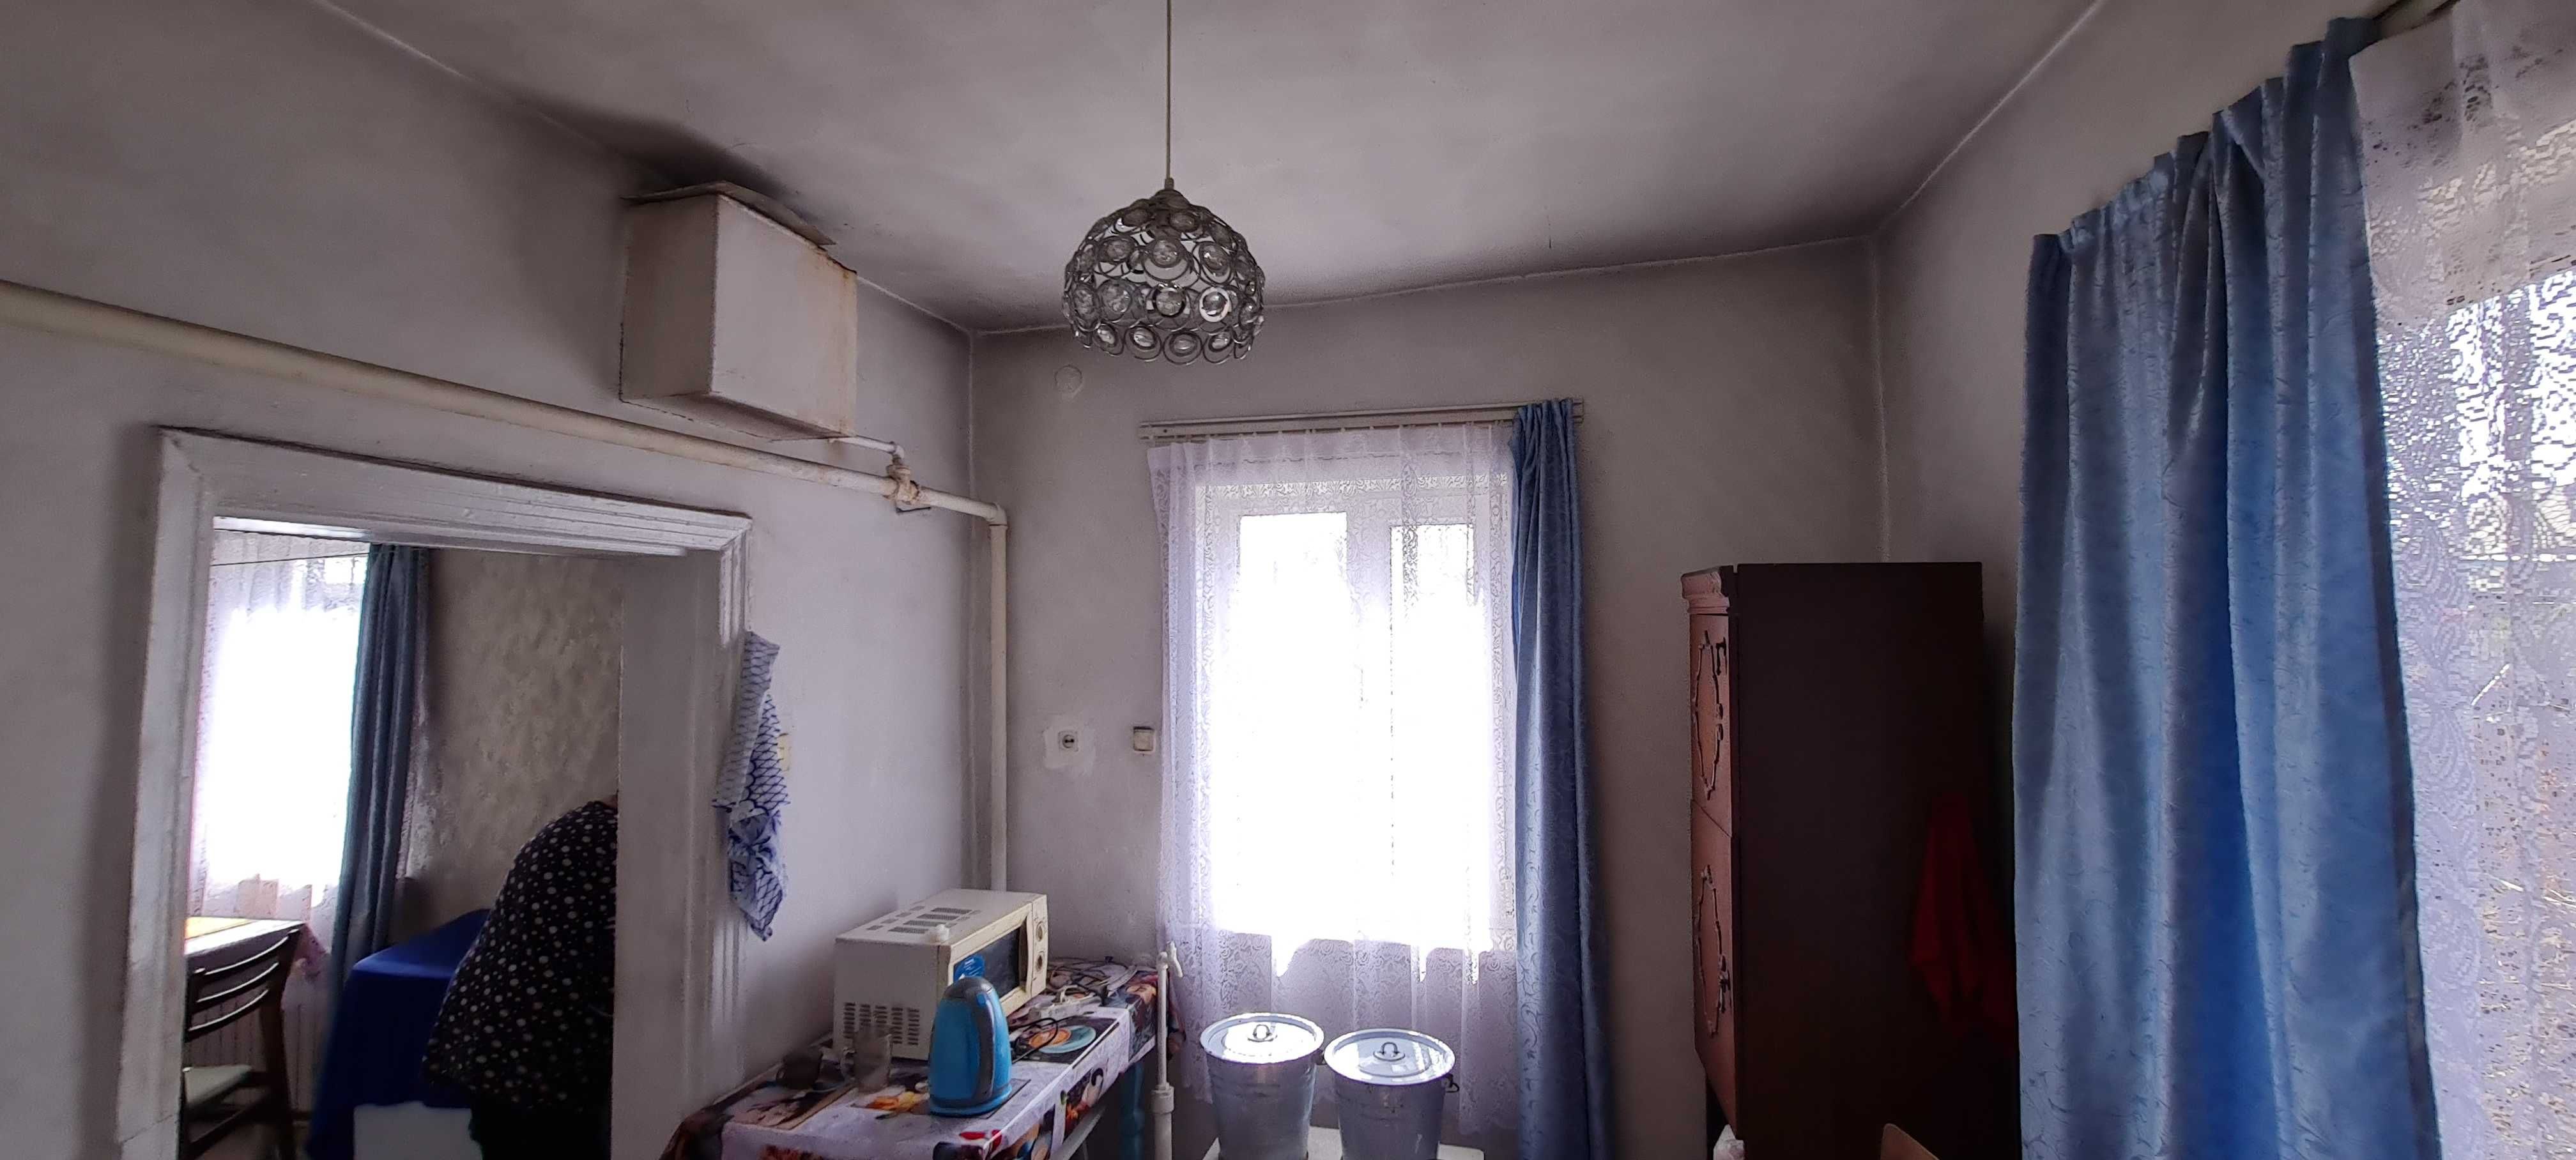 Дом 5-комнатный в Тихоновке (обмен на 2-х комнатную в Пришахтинске)